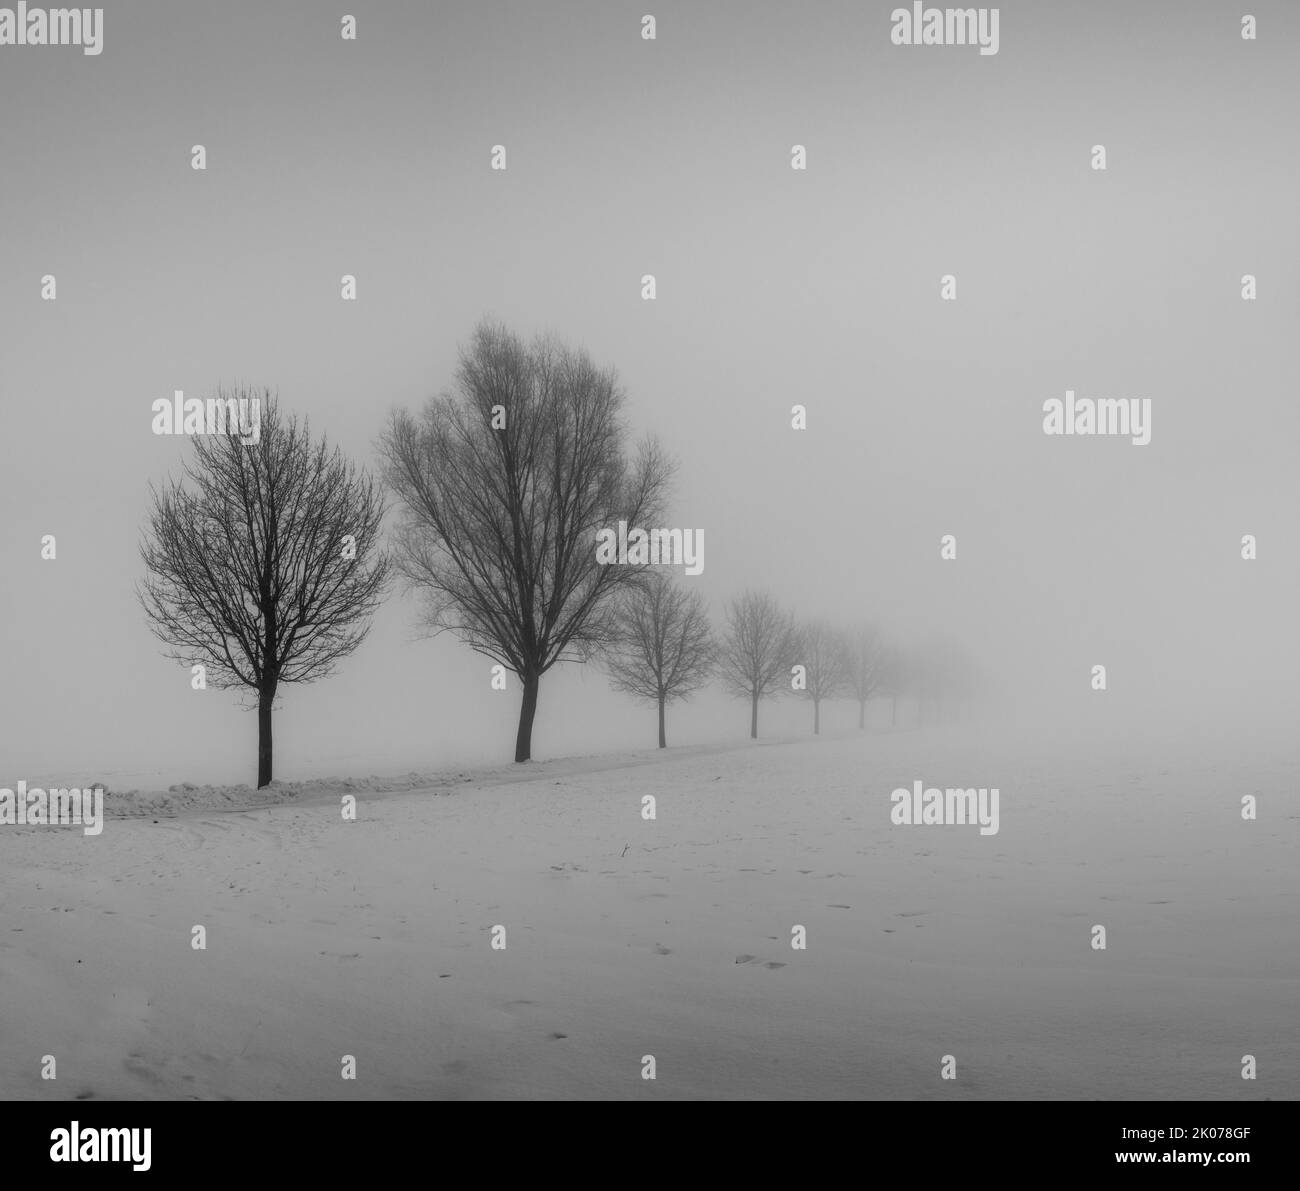 Rangée d'arbres dans la neige en brouillard, hiver, tempête de neige, noir et blanc, Kirchdorf a. d. Iller, Bade-Wurtemberg, Allemagne Banque D'Images